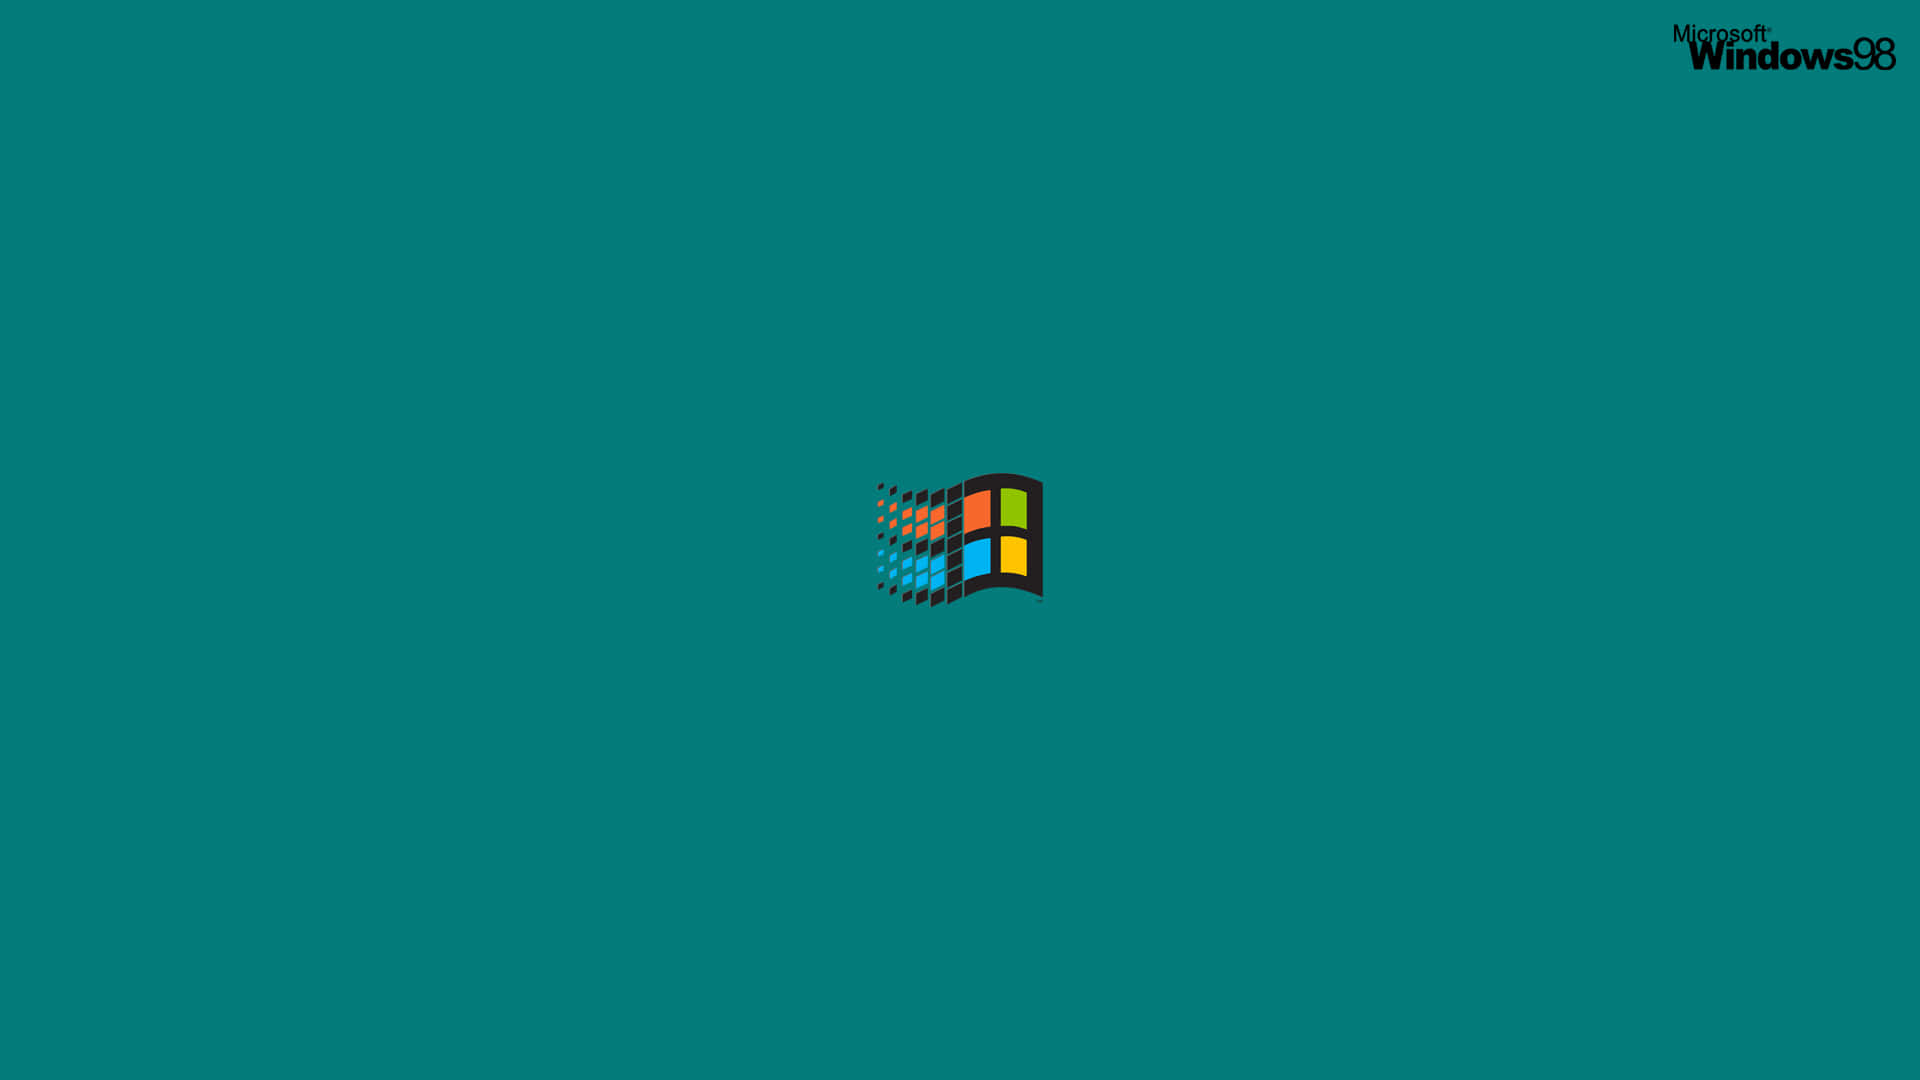 Logoer fra Windows 98 løber over skærmen. Wallpaper